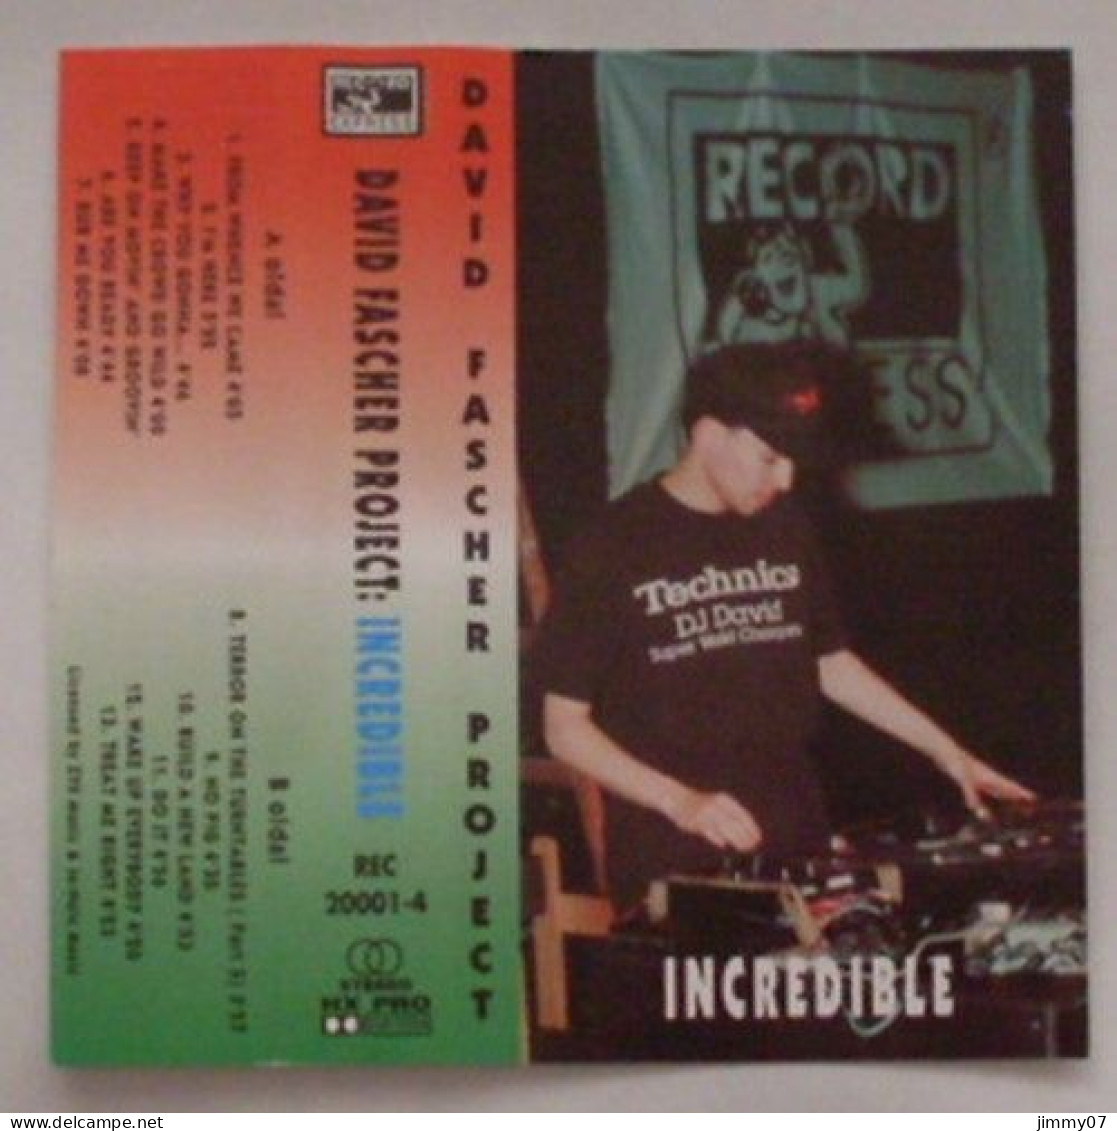 The David Fascher Project Feat. Jamal - Incredible (Cass, Album) - Audiokassetten